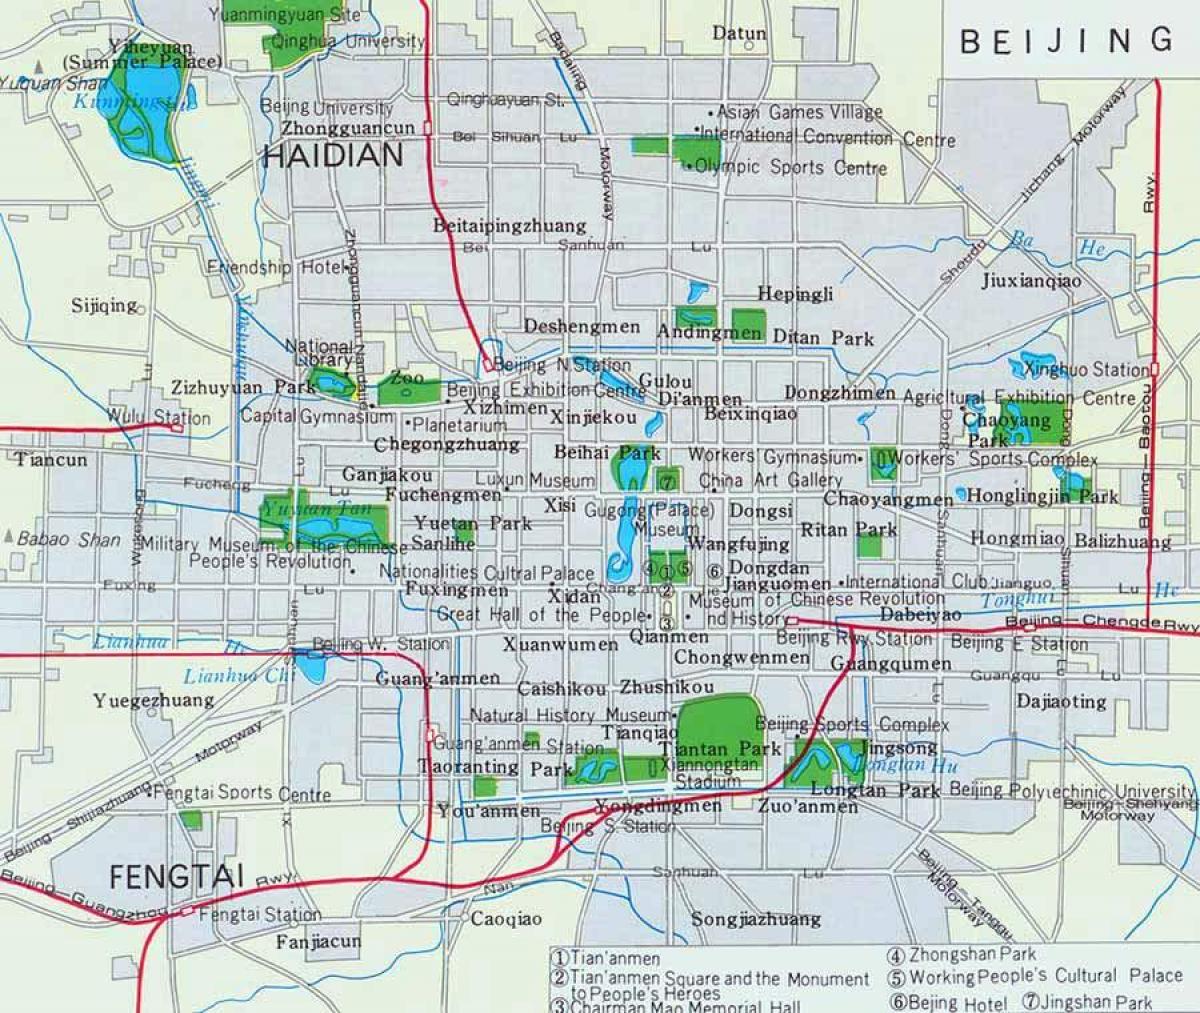 Beijing hiria zentroa mapa